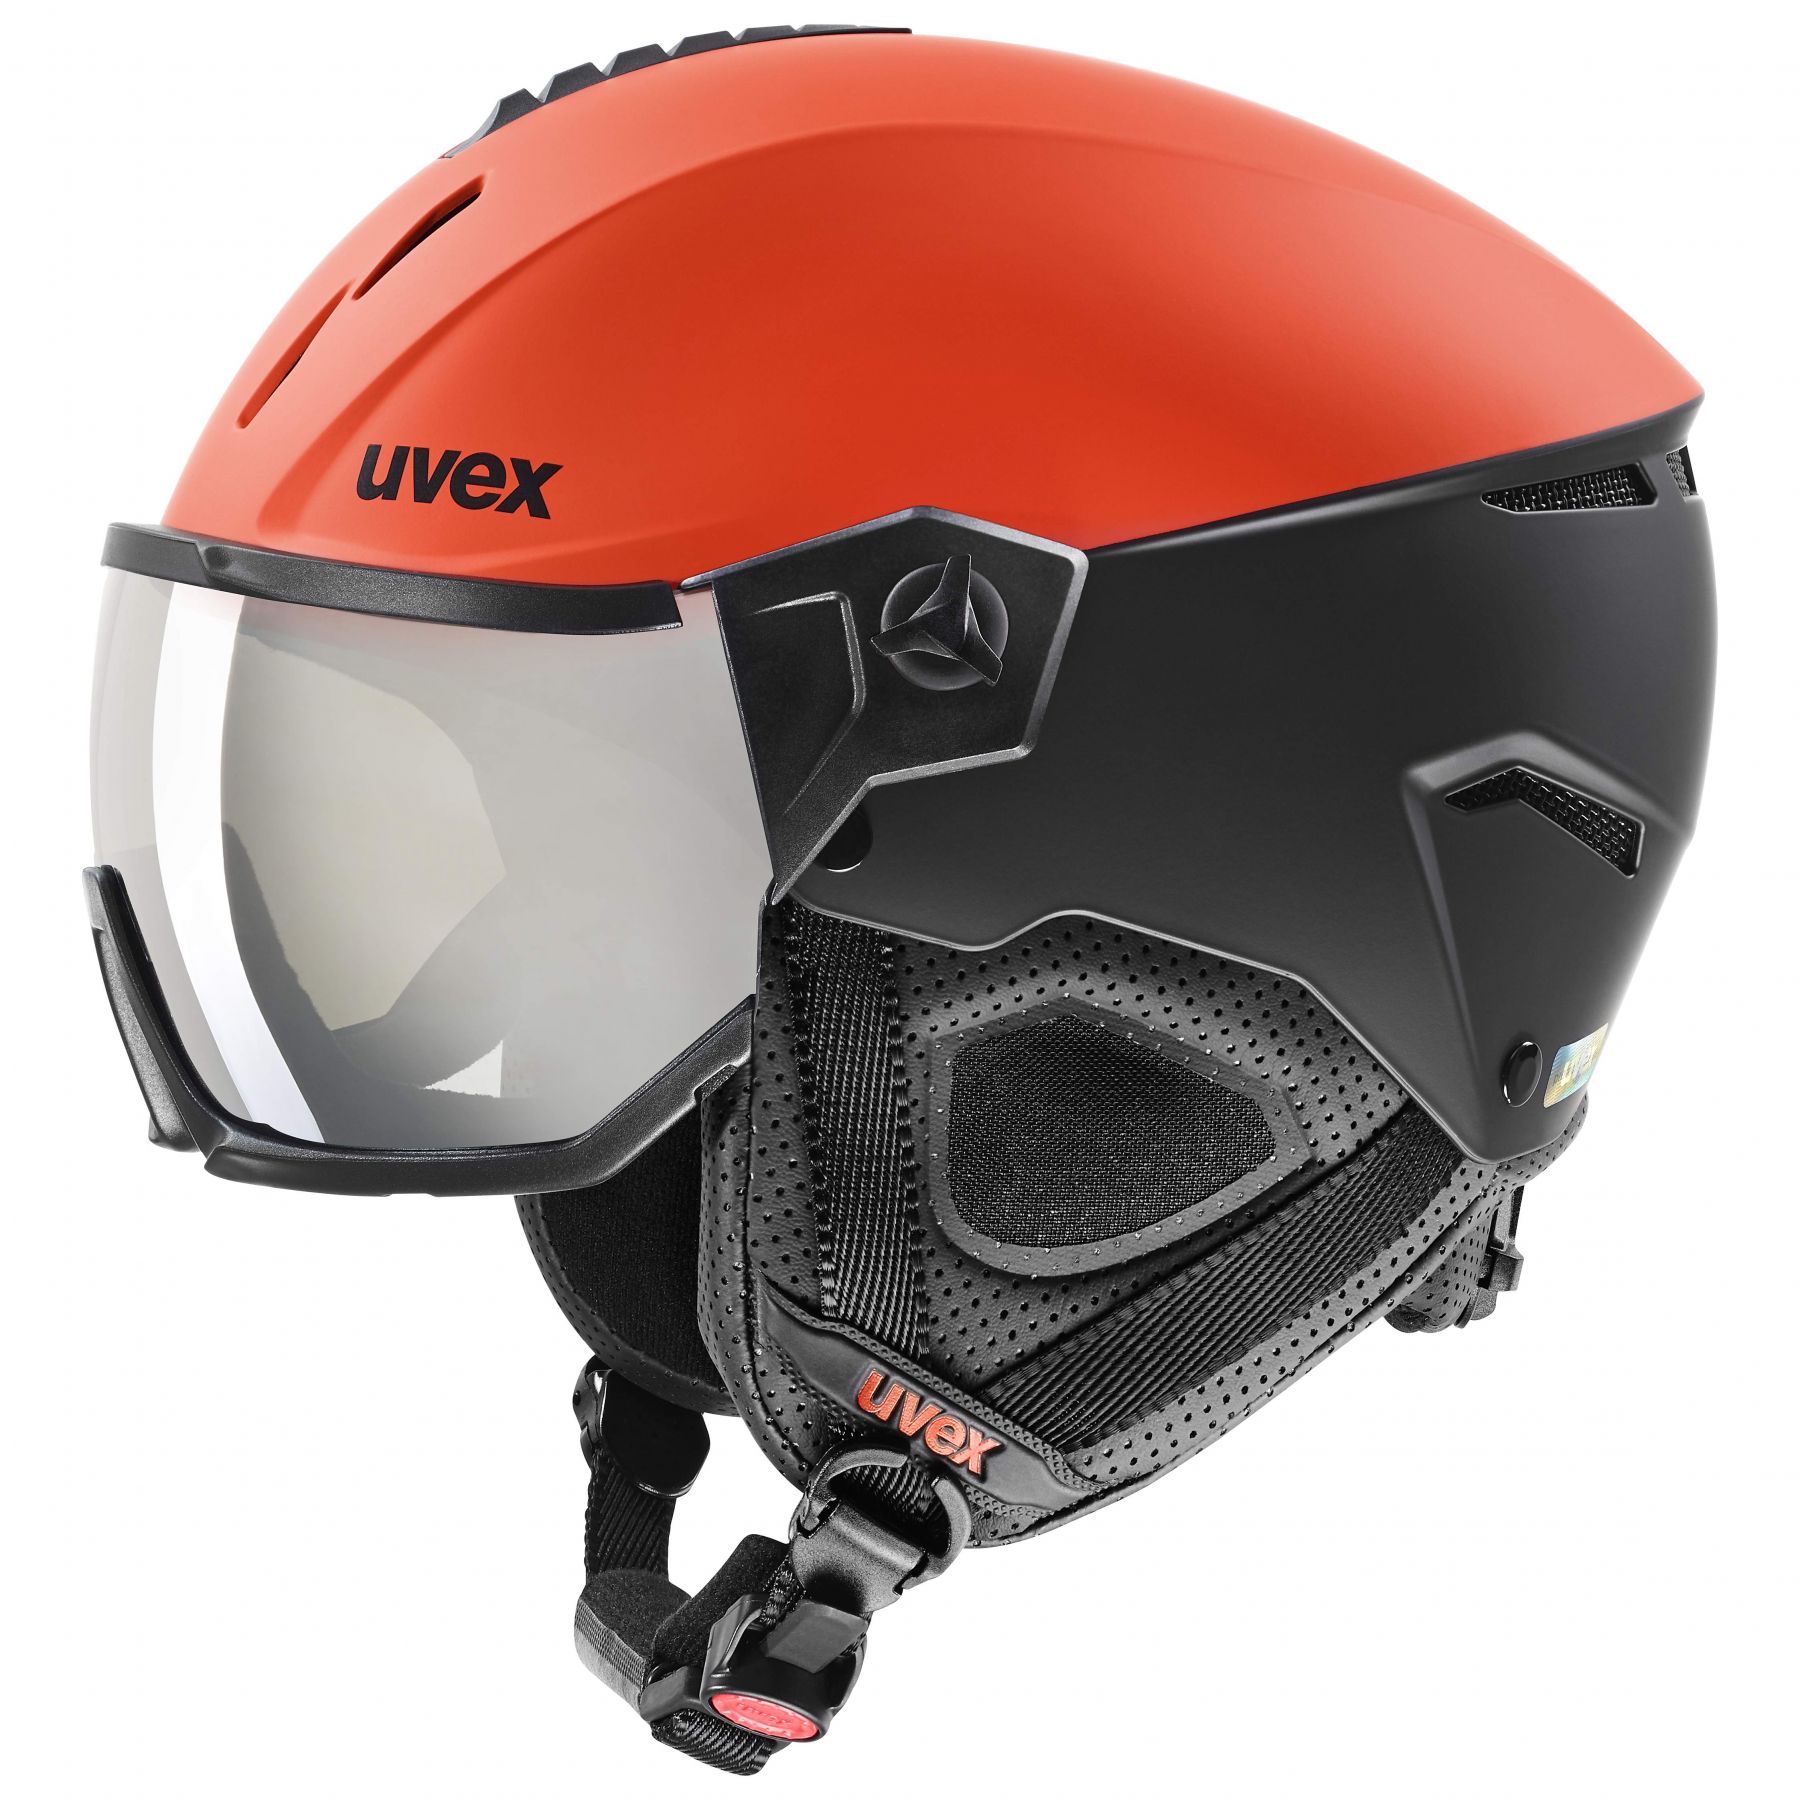 Billede af Uvex Instinct Visor, skihjelm med visir, rød/sort hos Skisport.dk